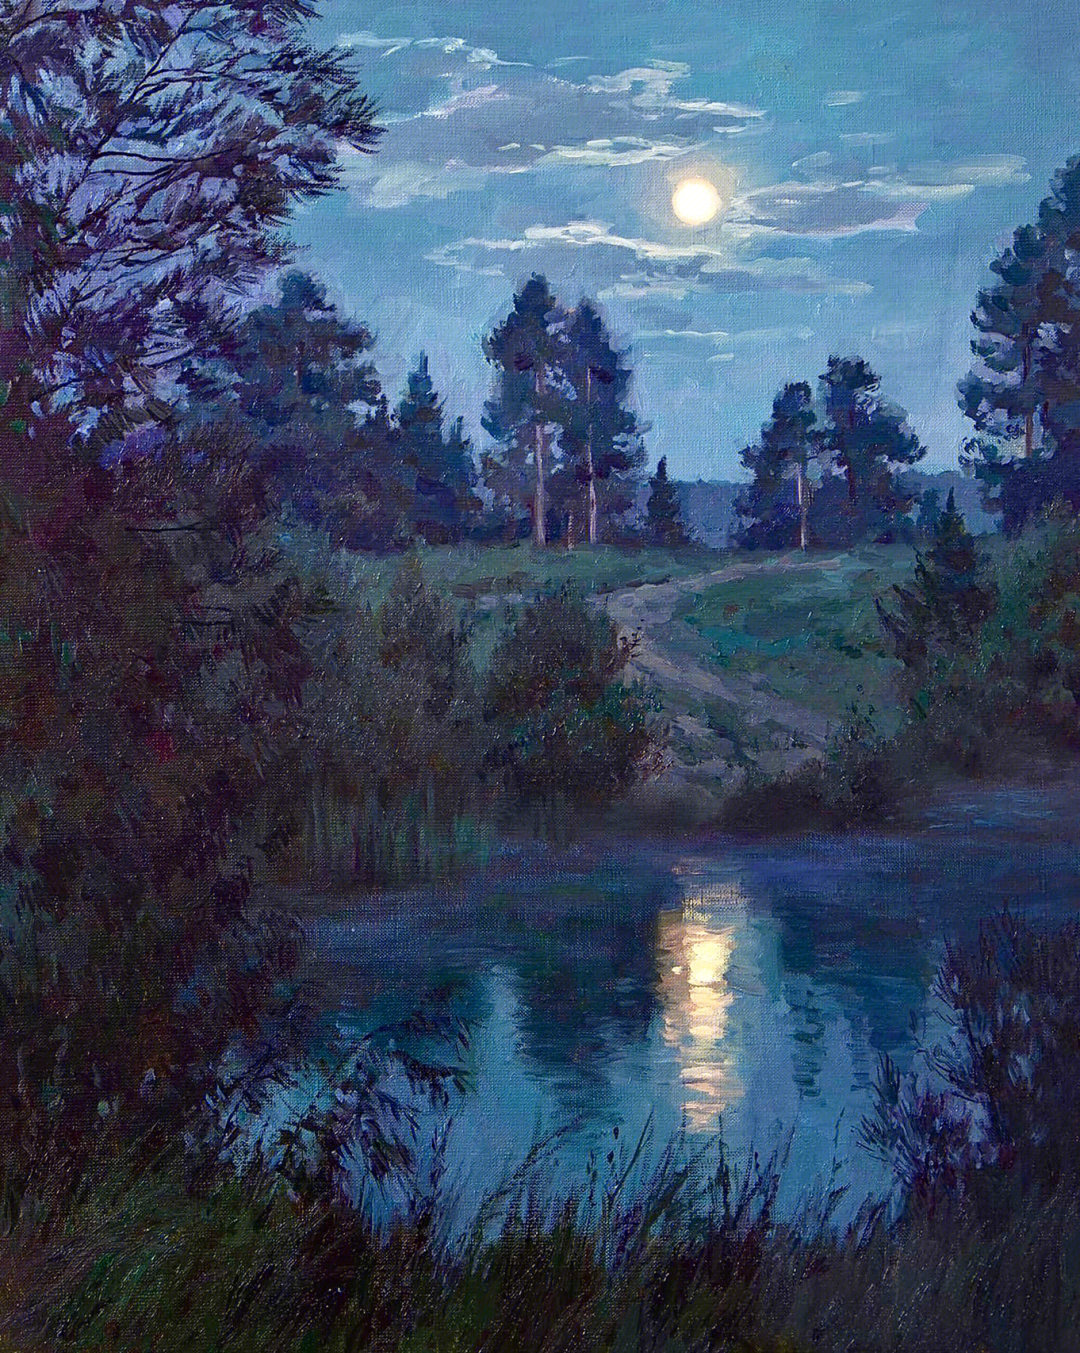 俄罗斯油画《月夜》图片